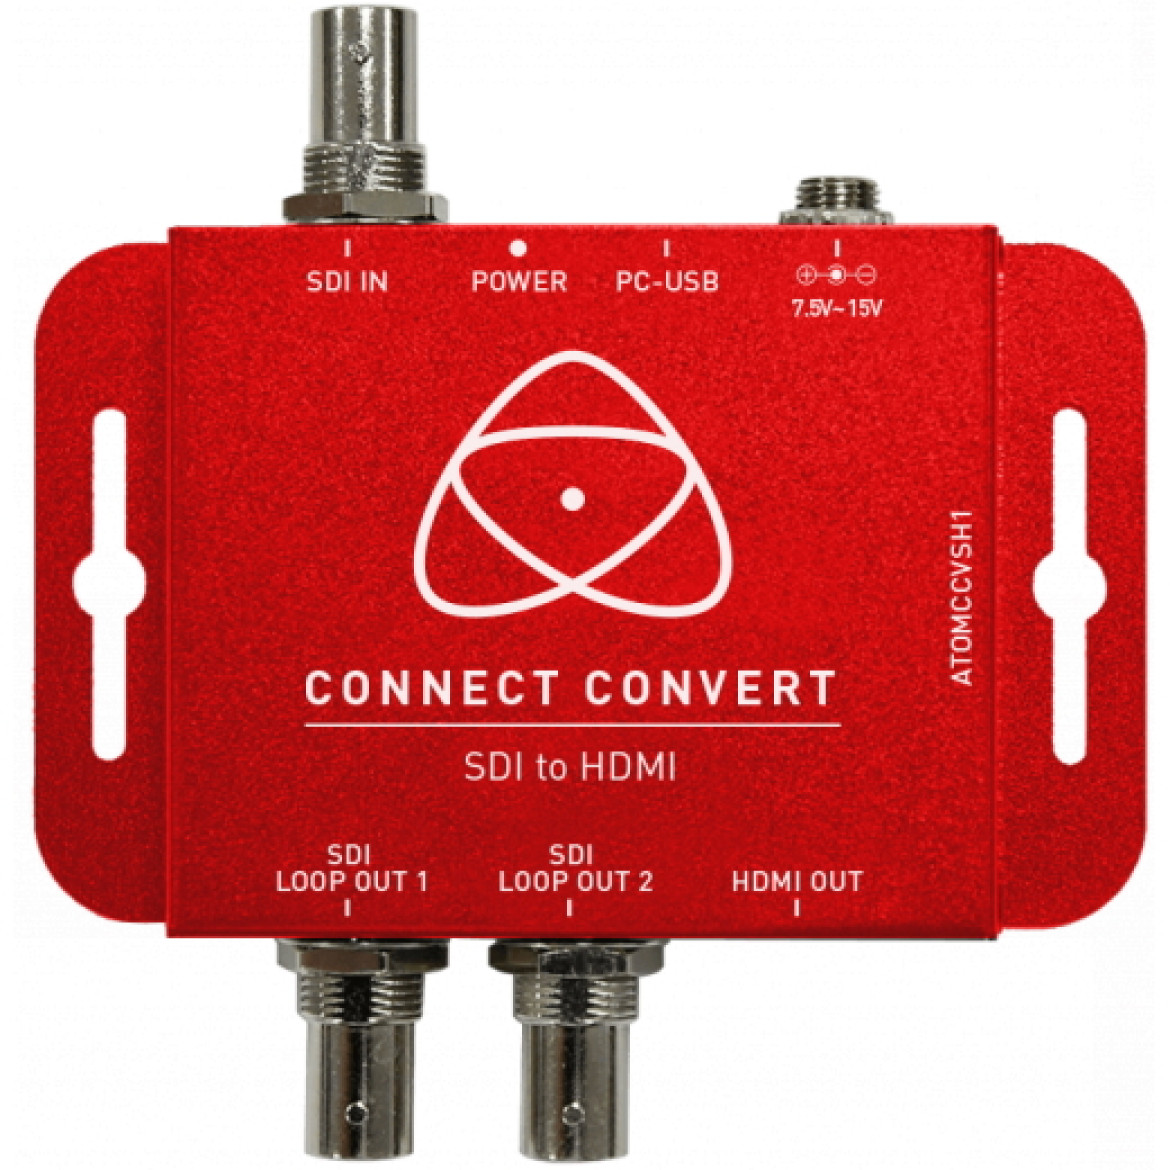 Atomos Connect Converter ATOMCCVSH1 - kompaktowy konwerter SDI na HDMI o jakości transmisji z pełnym rozmiarem 3G / HD / SD-SDI, blokowany HDMI, blokowany zasilacz DC i zdejmowane uchwyty montażowe